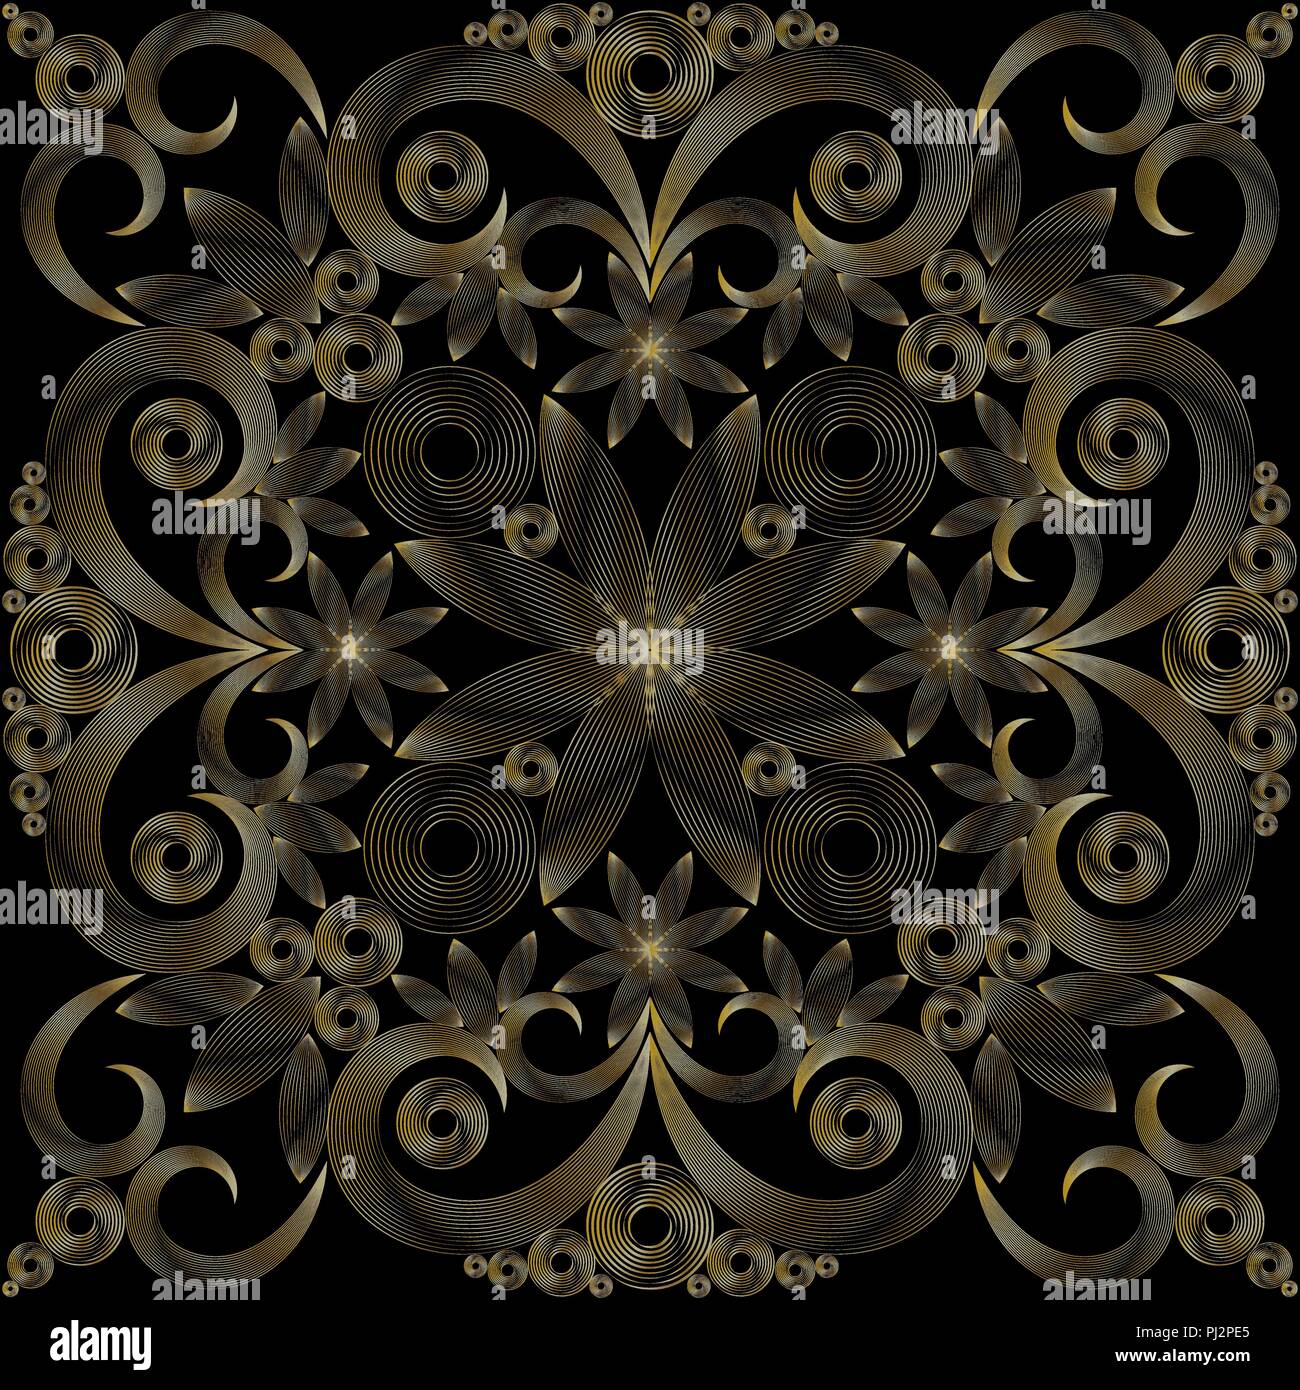 Fond noir avec des lignes de couleur or ornement floral Illustration de Vecteur